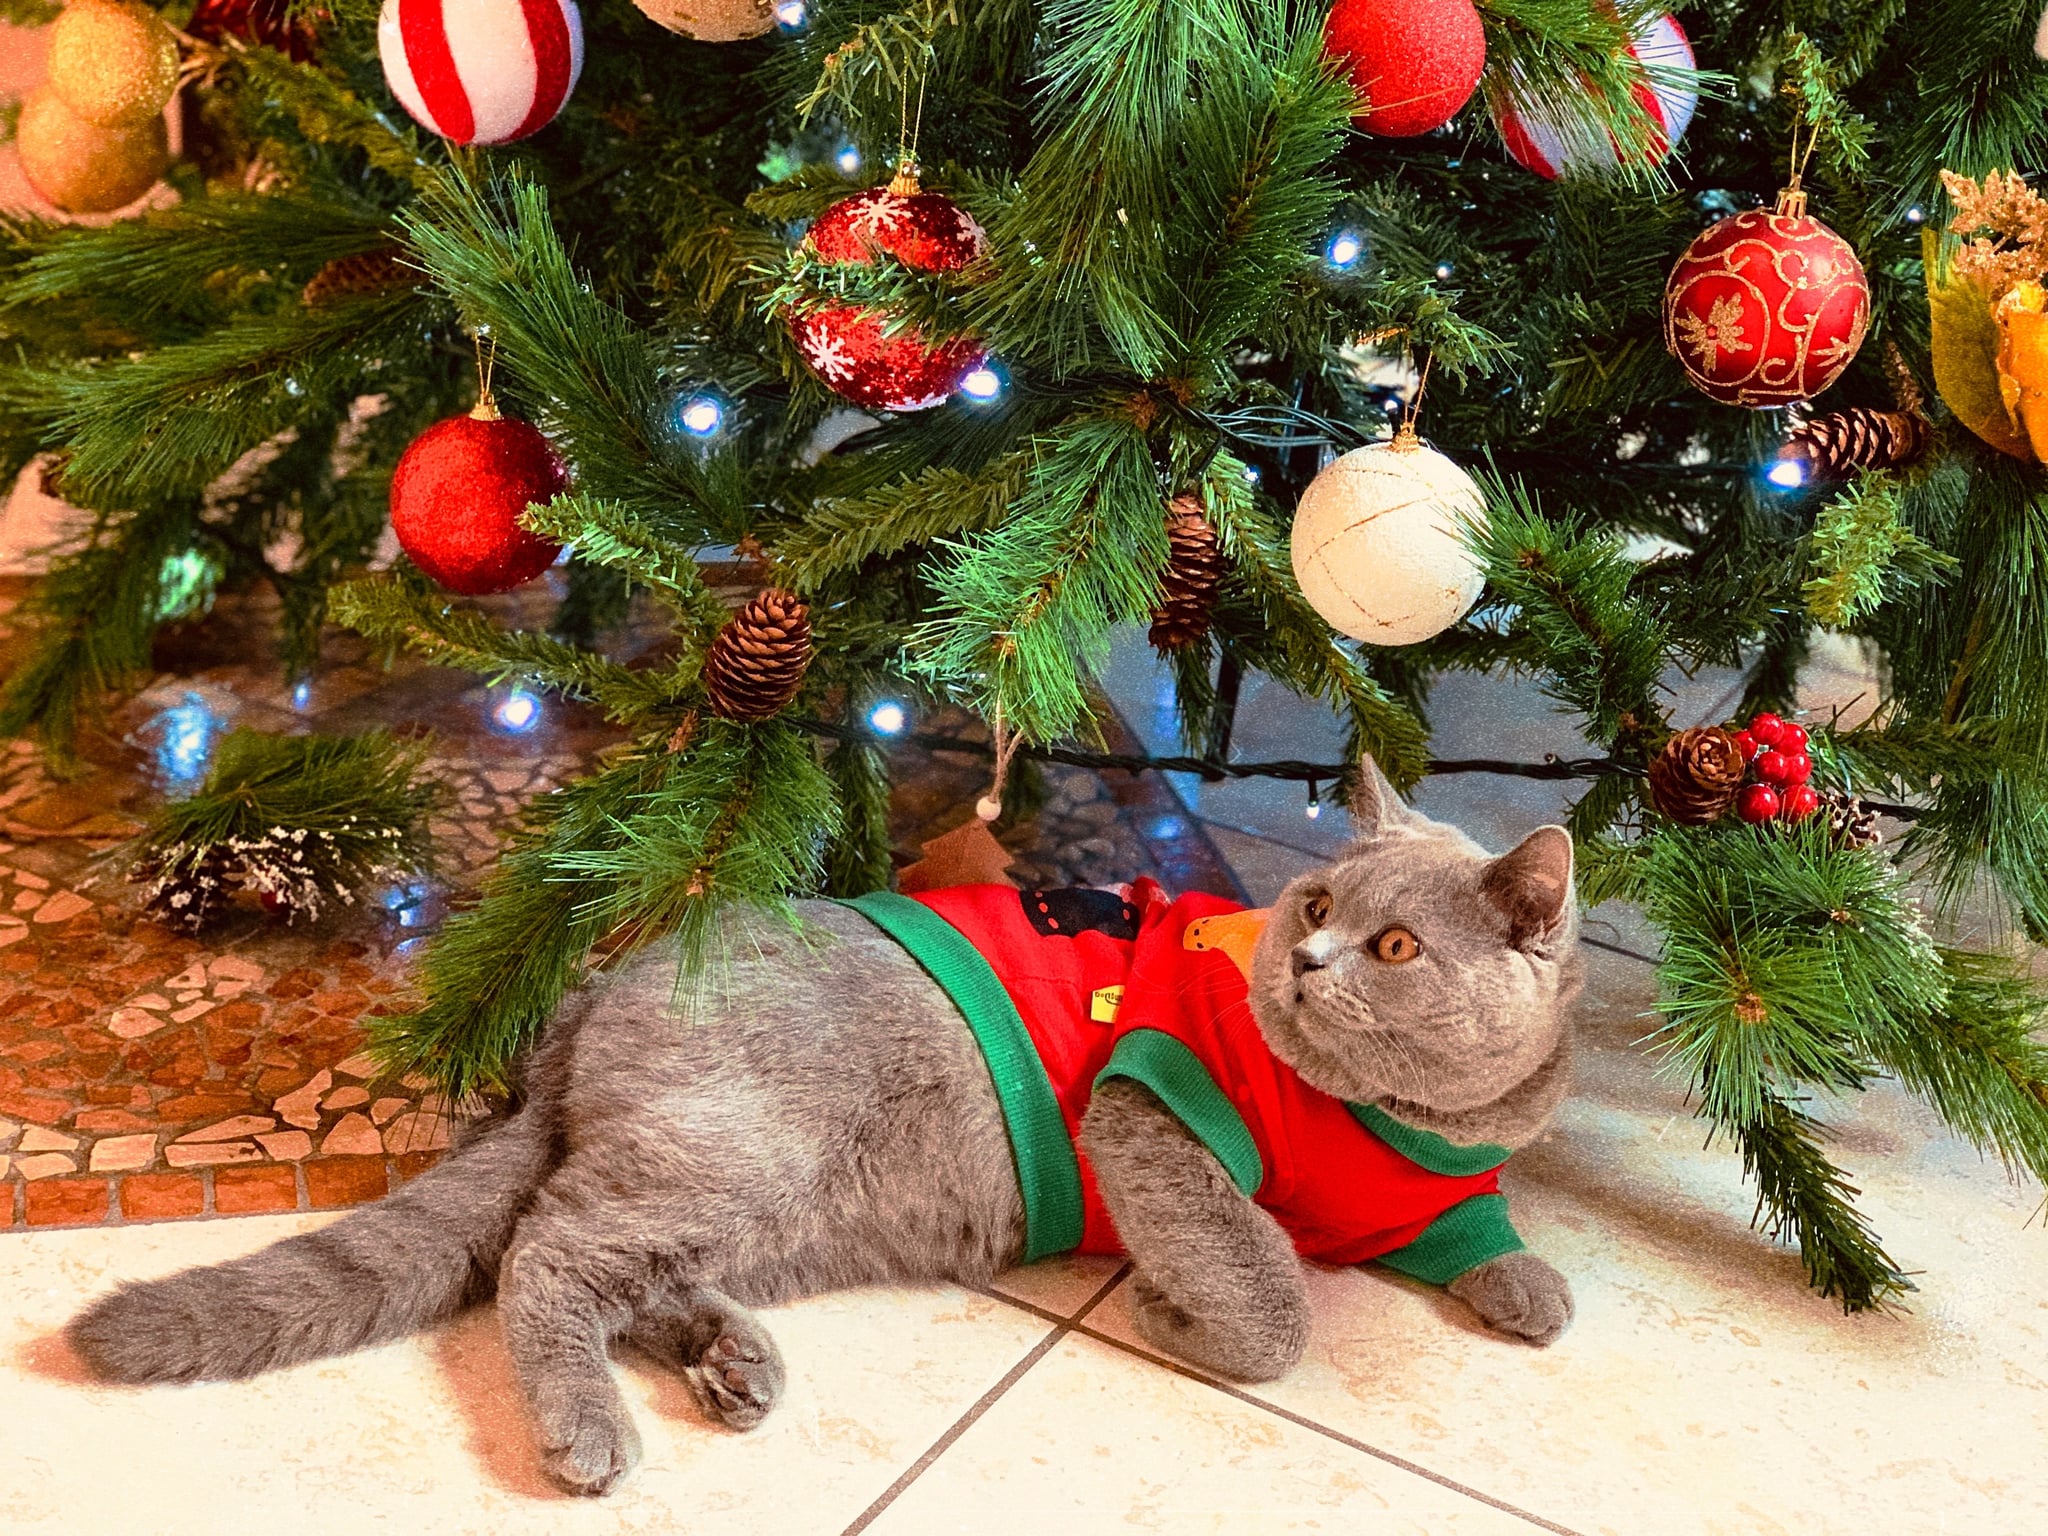 Đừng bỏ lỡ cơ hội sở hữu nền phông Zoom với chủ đề mèo và 20 hình nền Giáng Sinh. Với những hình ảnh đáng yêu của chú mèo trong những bộ cánh Giáng Sinh, bạn sẽ có một nền tảng Zoom độc đáo và đầy thú vị. Ngoài ra, chúng tôi cũng cung cấp 20 hình nền Giáng Sinh khác để bạn lựa chọn. Hãy xem hình để truy cập vào các hình nền.